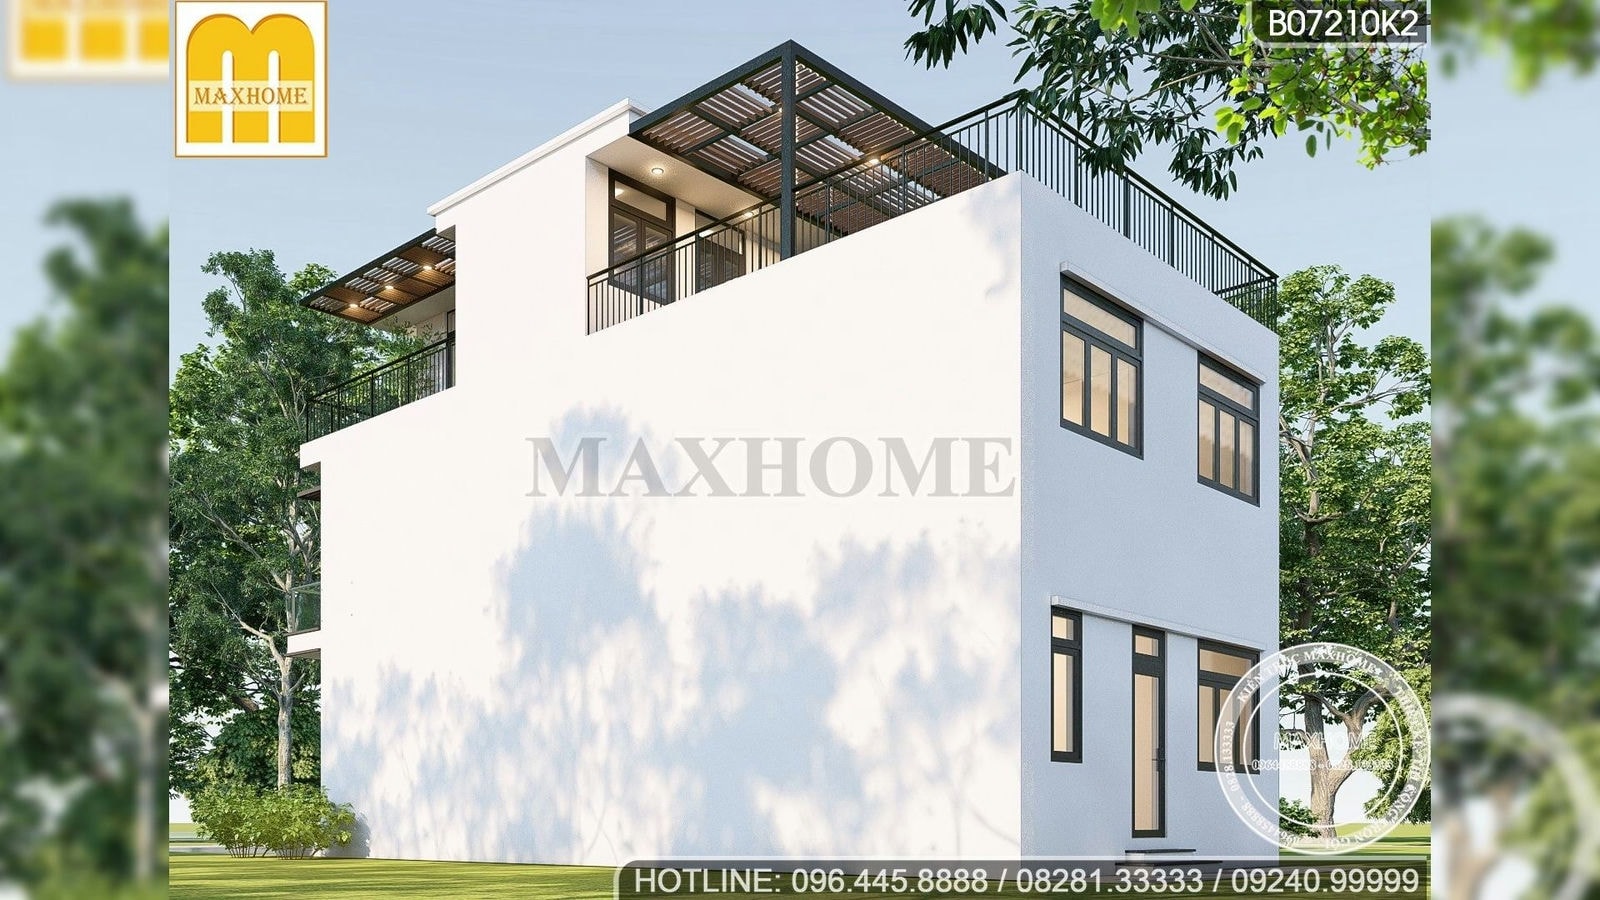 Maxhome xây nhà hiện đại 7x15m cực đẹp tại Thái Nguyên | MH01614